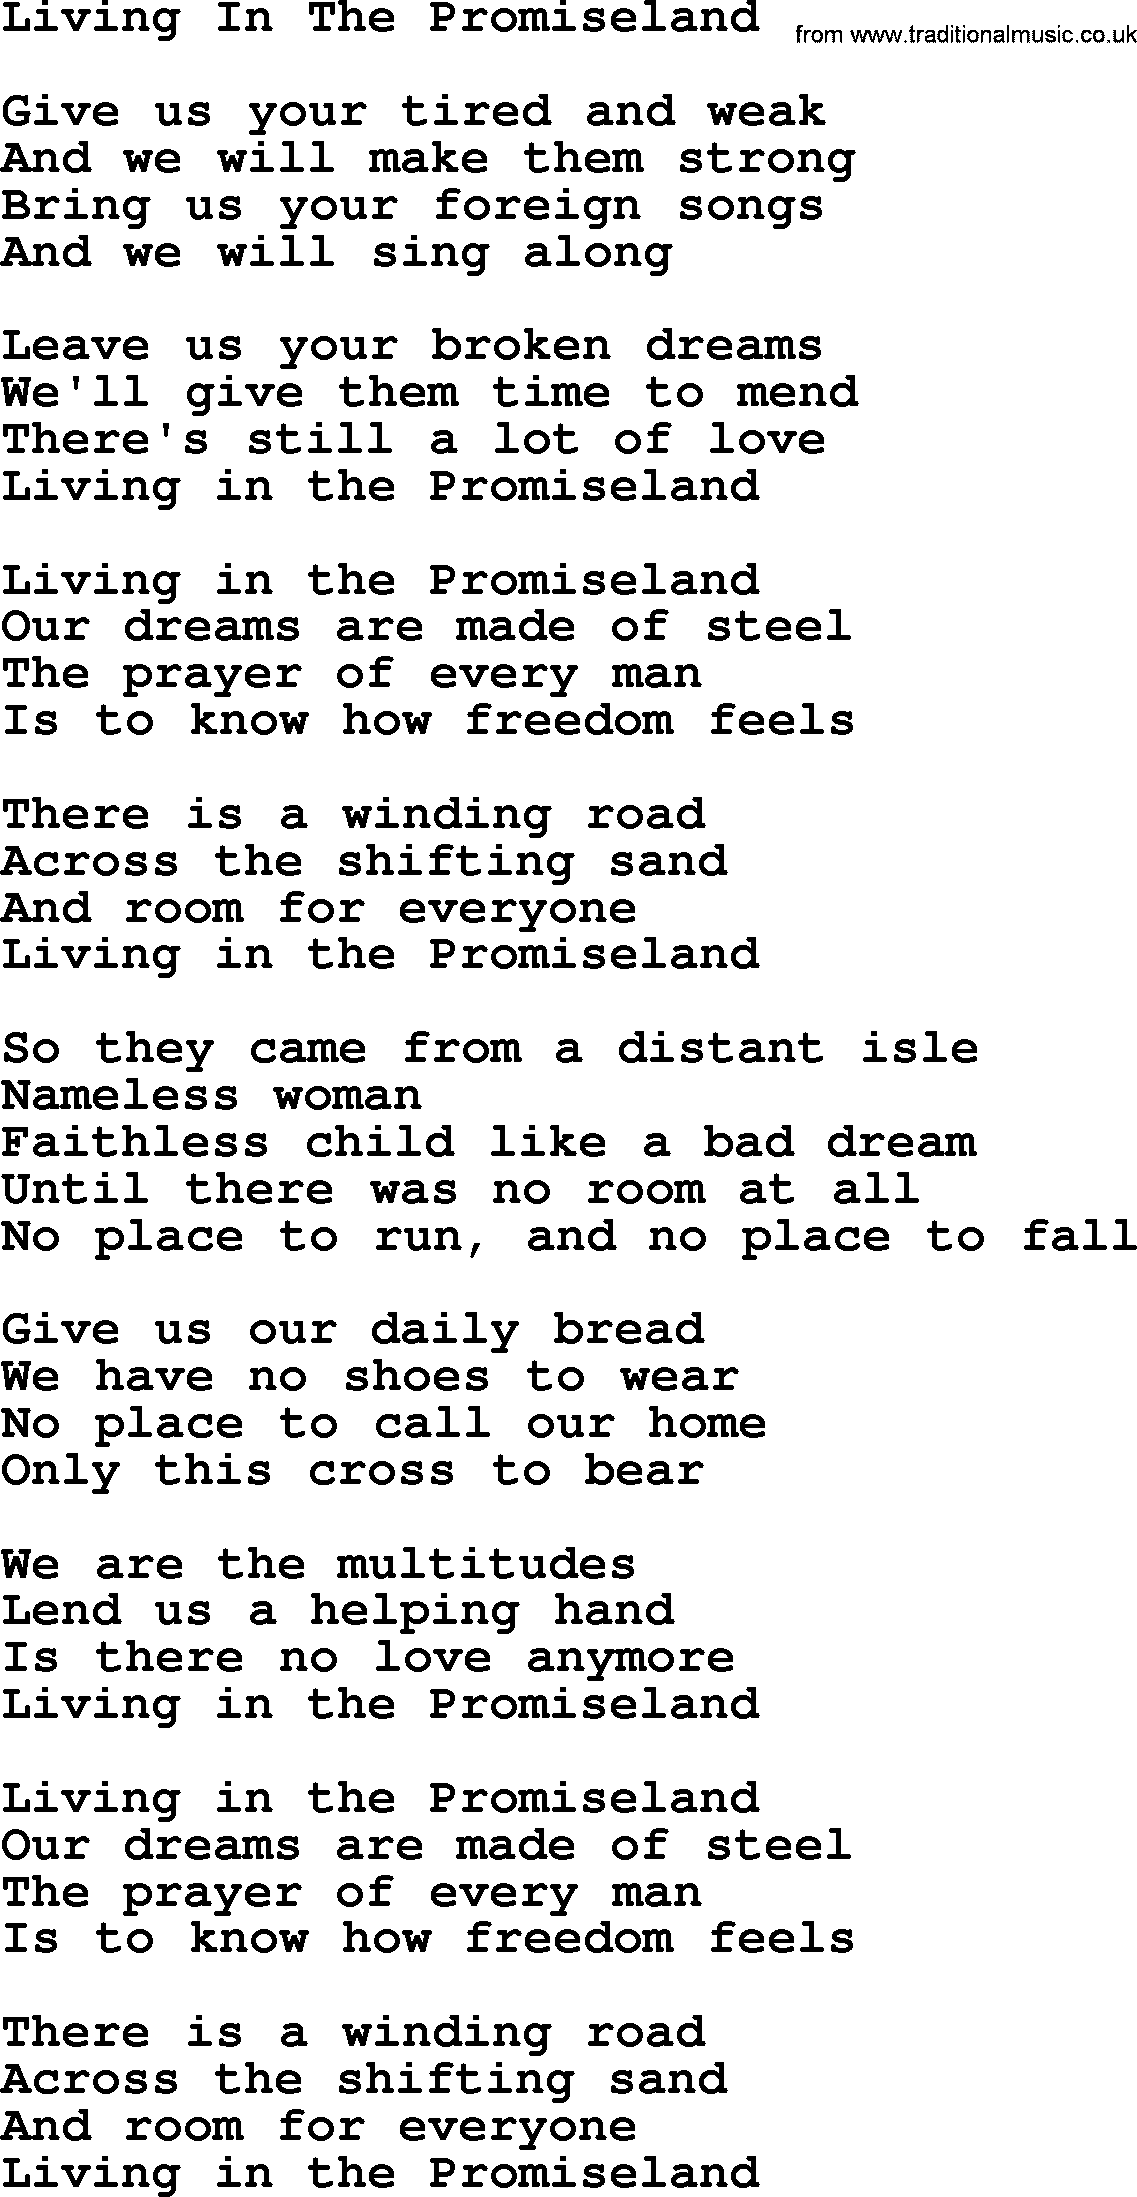 Willie Nelson song: Living In The Promise Land lyrics